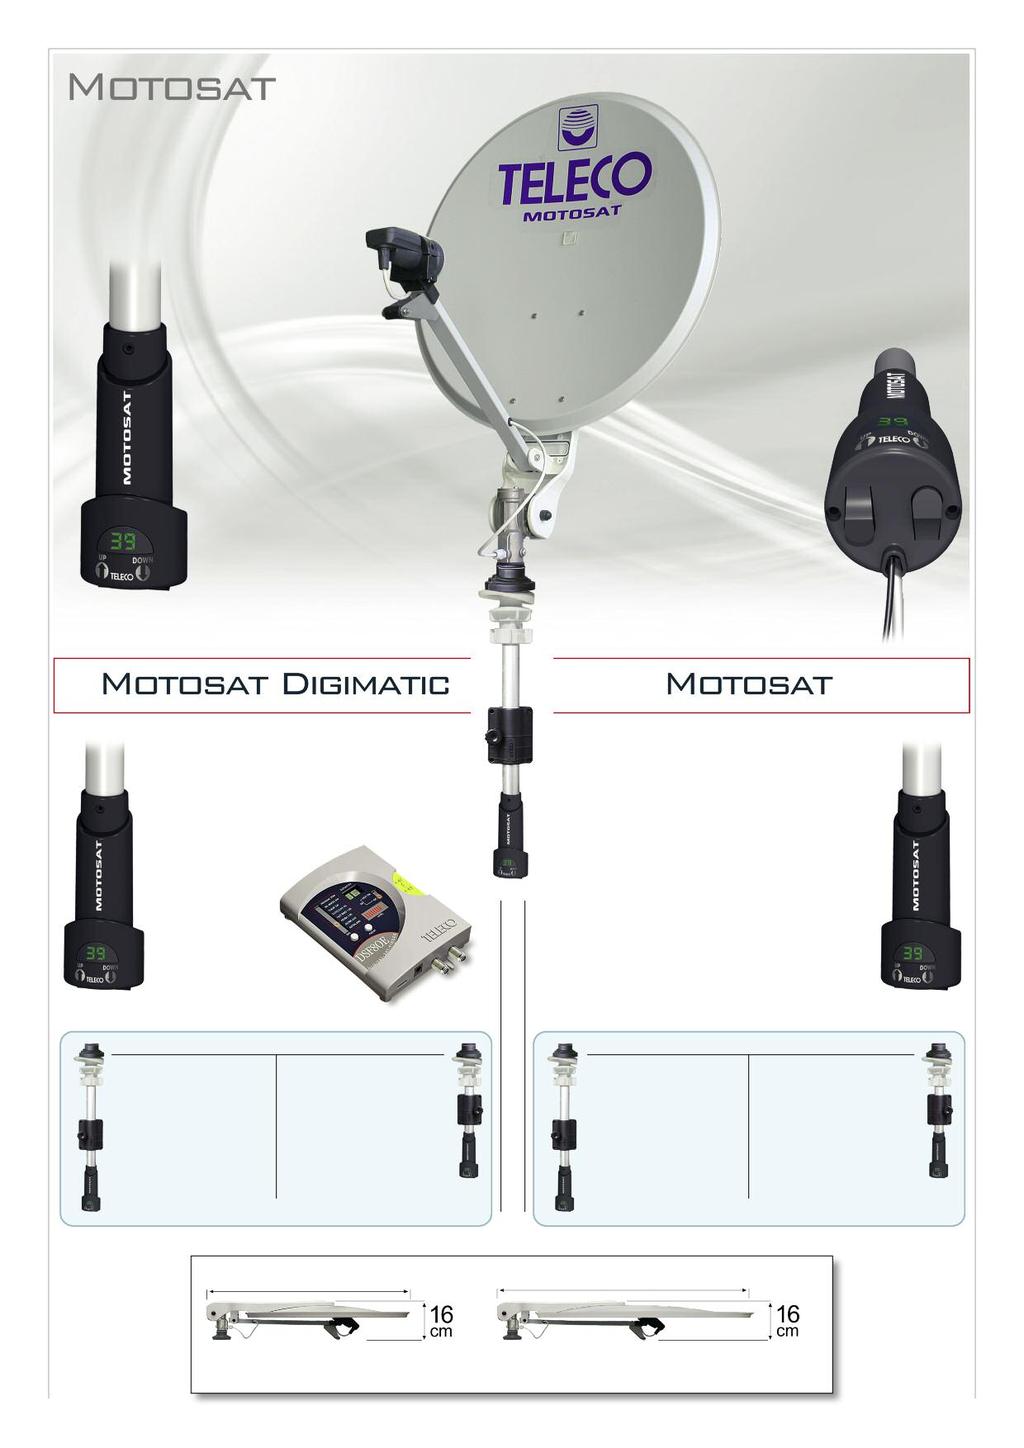 Antenne satellite motorisée semi-automatique MotoSat est un système d'antenne satellite semiautomatique muni de moteur électrique à 12 Volts qui facilite considérablement l'opération d'ouverture et